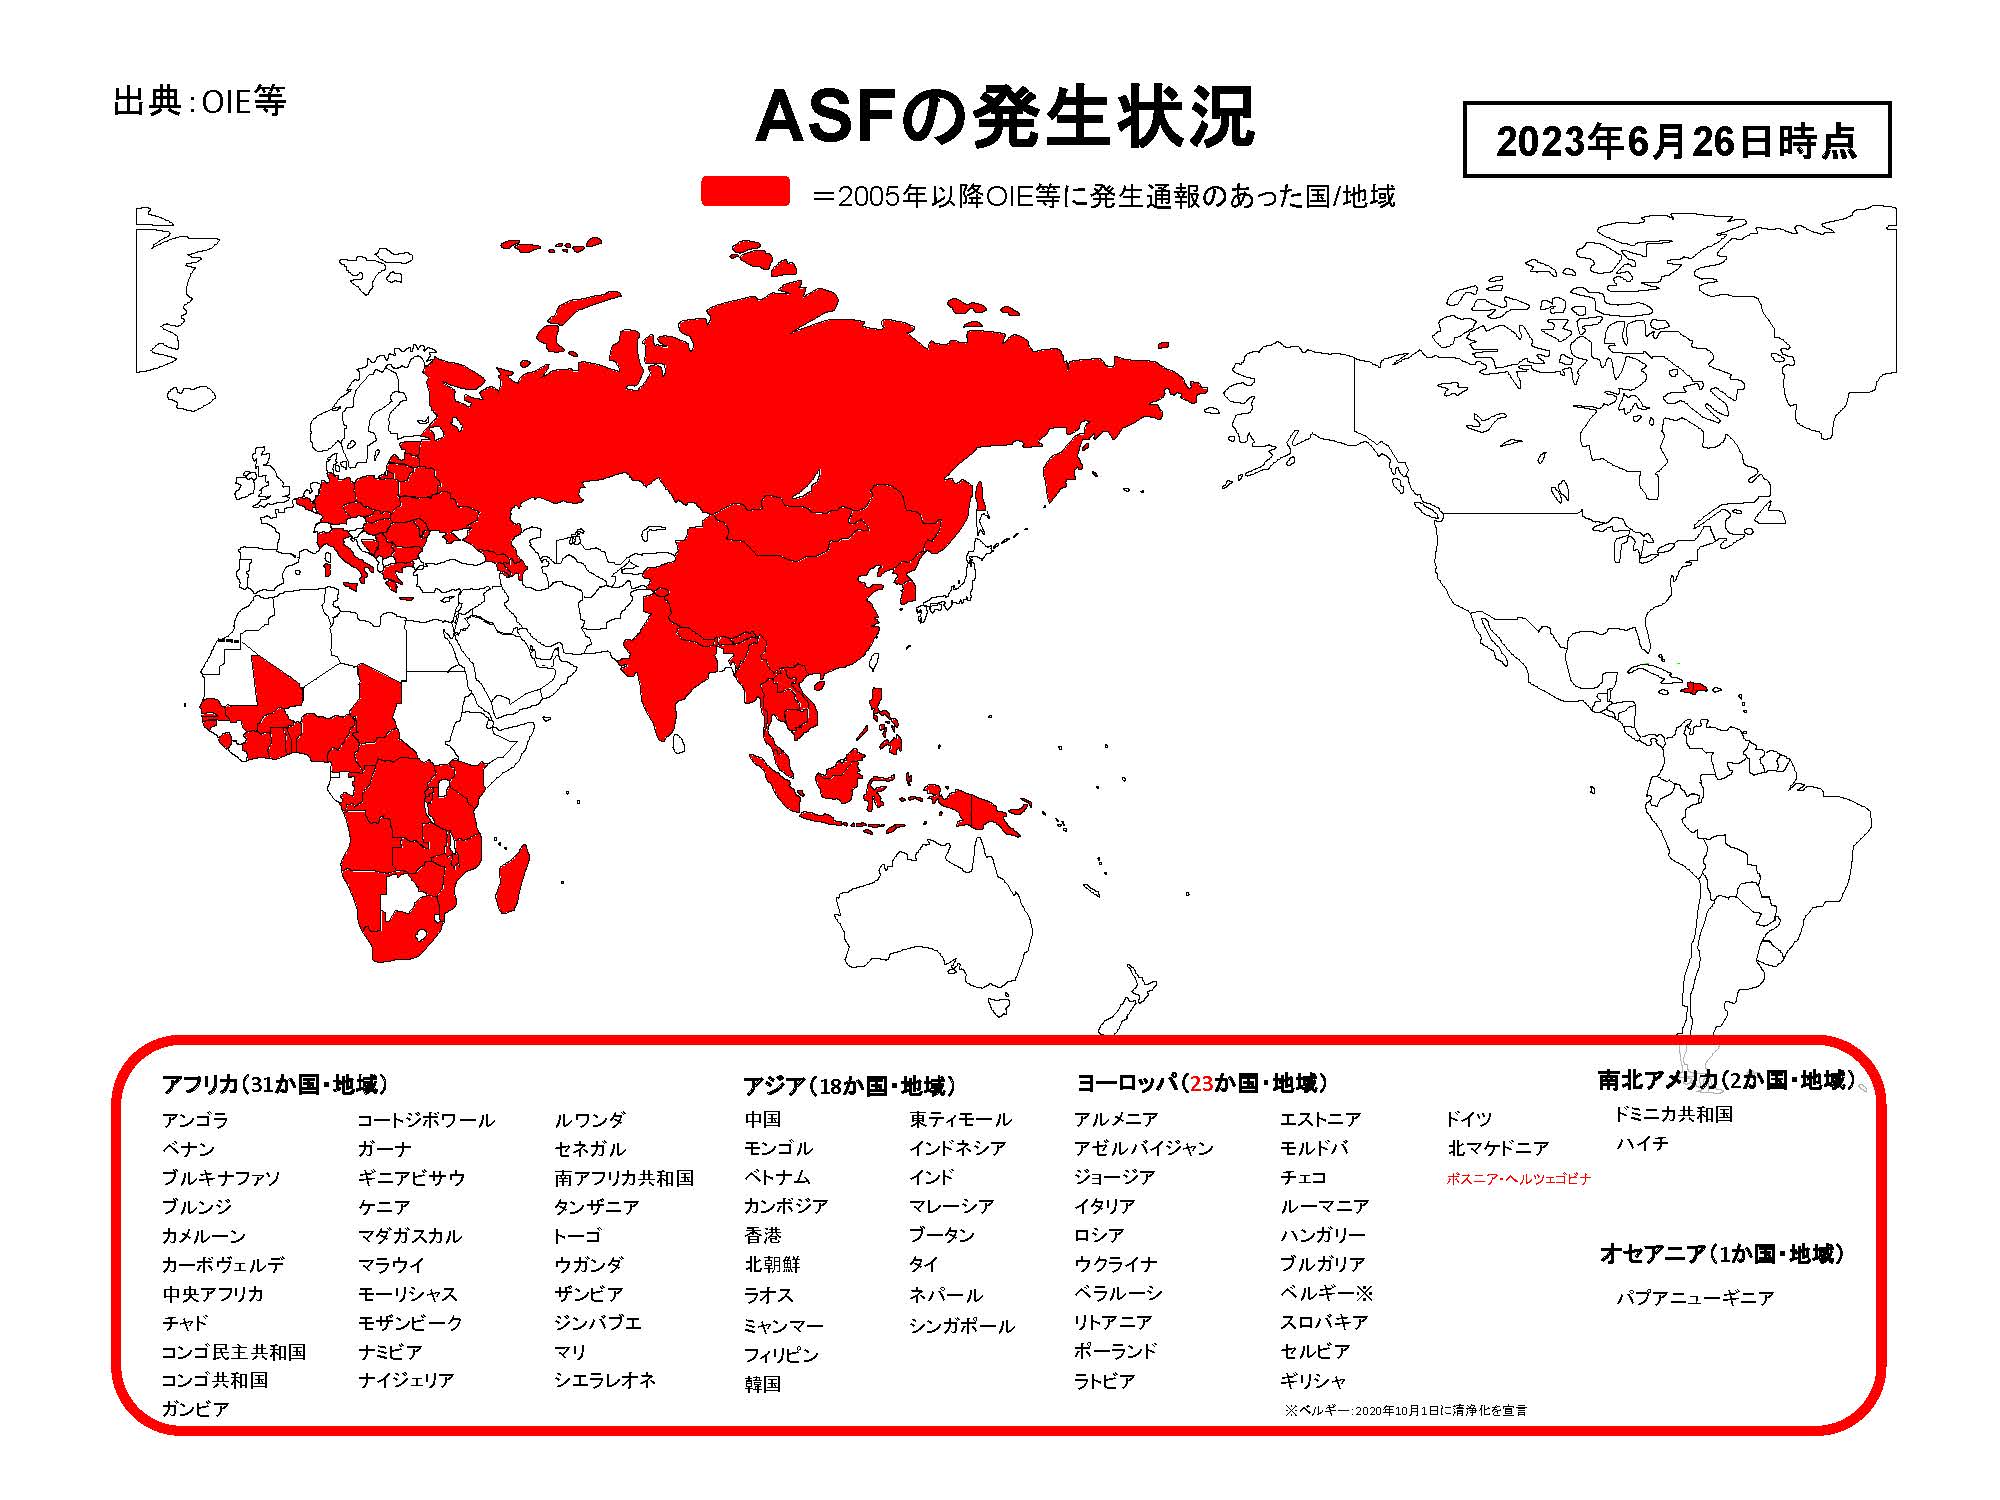 2023年6月26日現在のASFの発生状況を示した世界地図のイラスト（提供は農林水産省）